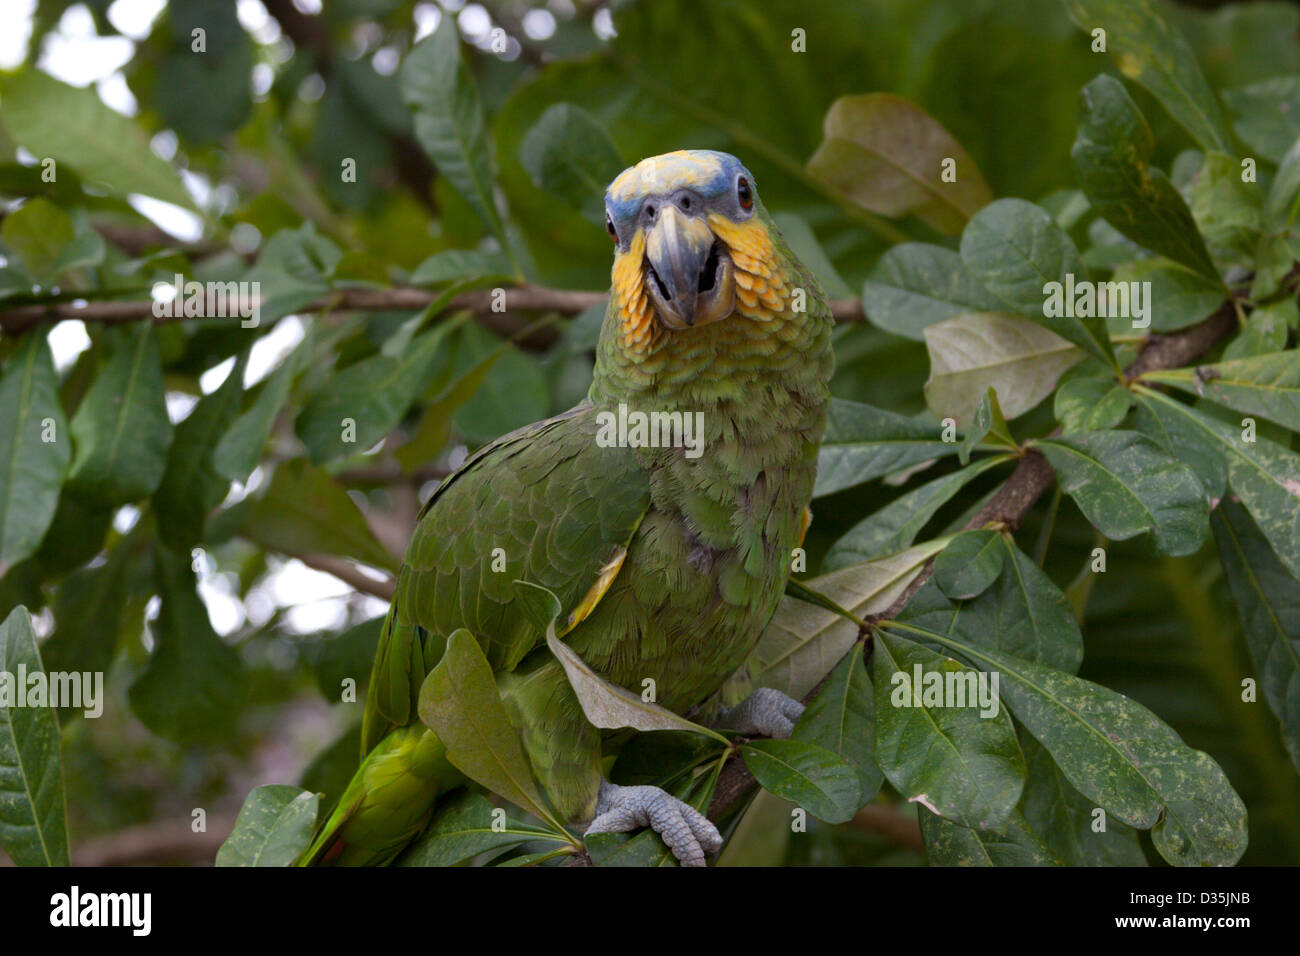 Perroquet vert lorro le plumage des oiseaux jungle Pérou Banque D'Images